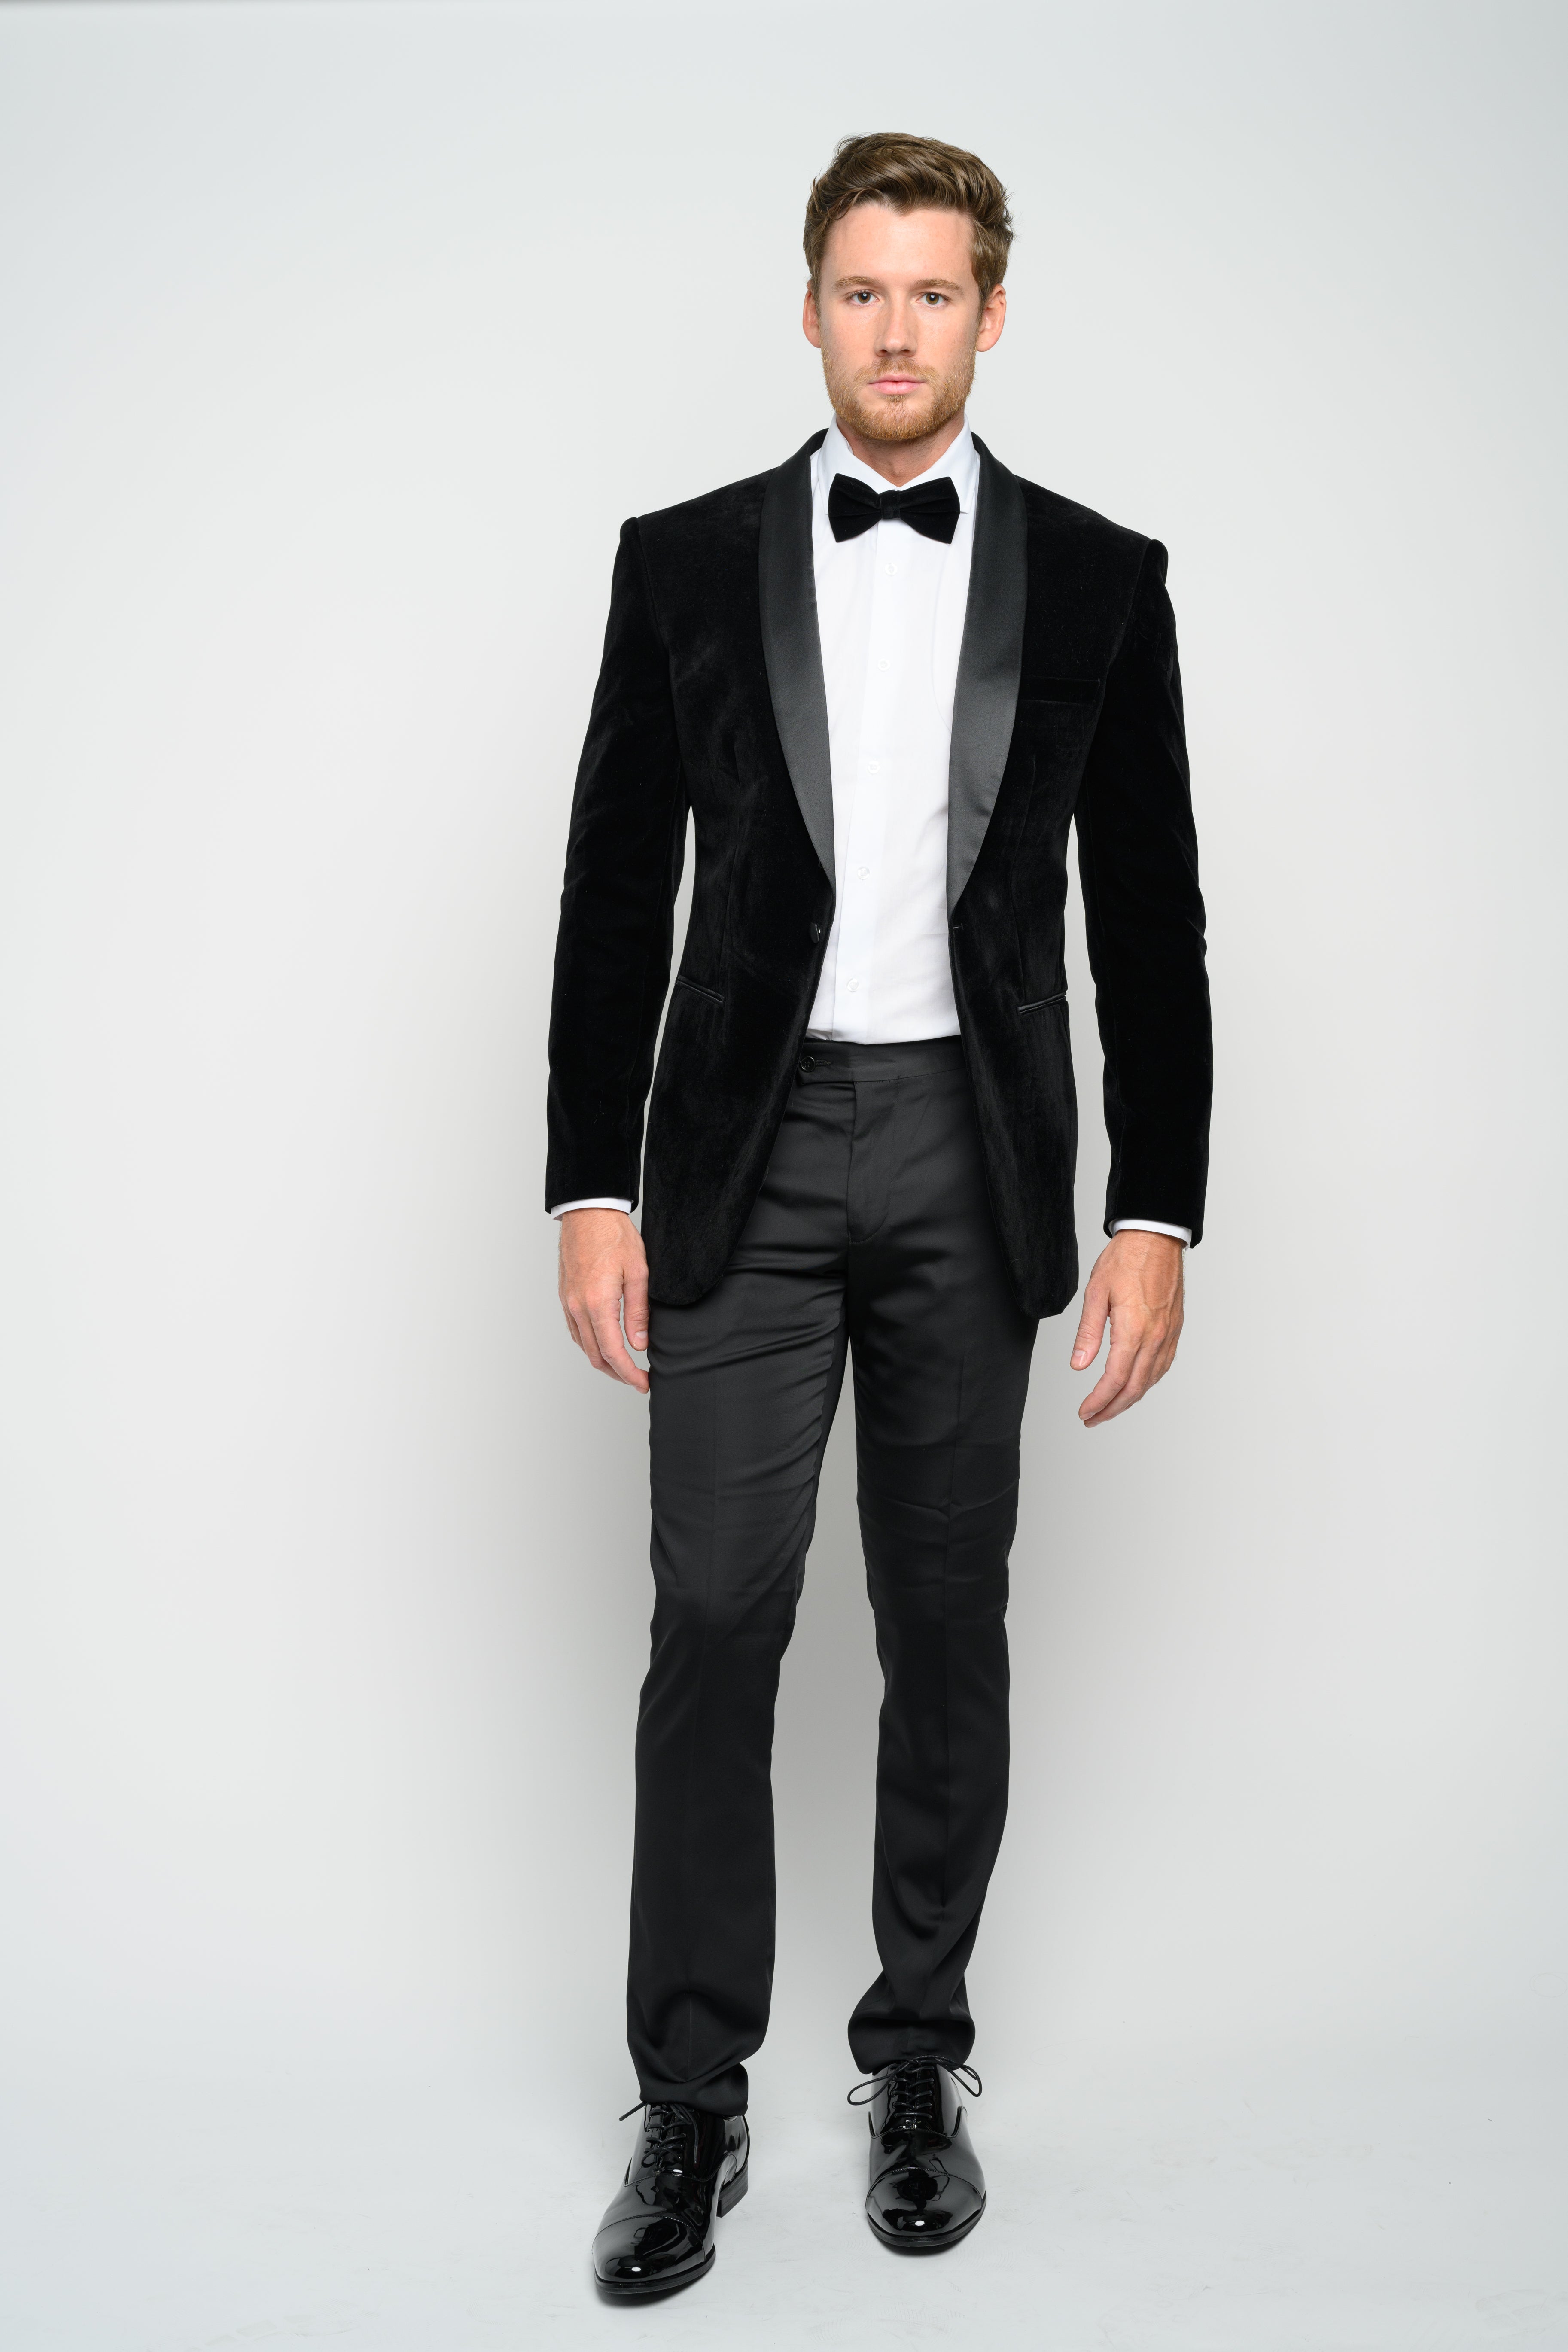 Limehaus | Men's Stone Speckle Slim Fit Suit | Suit Direct